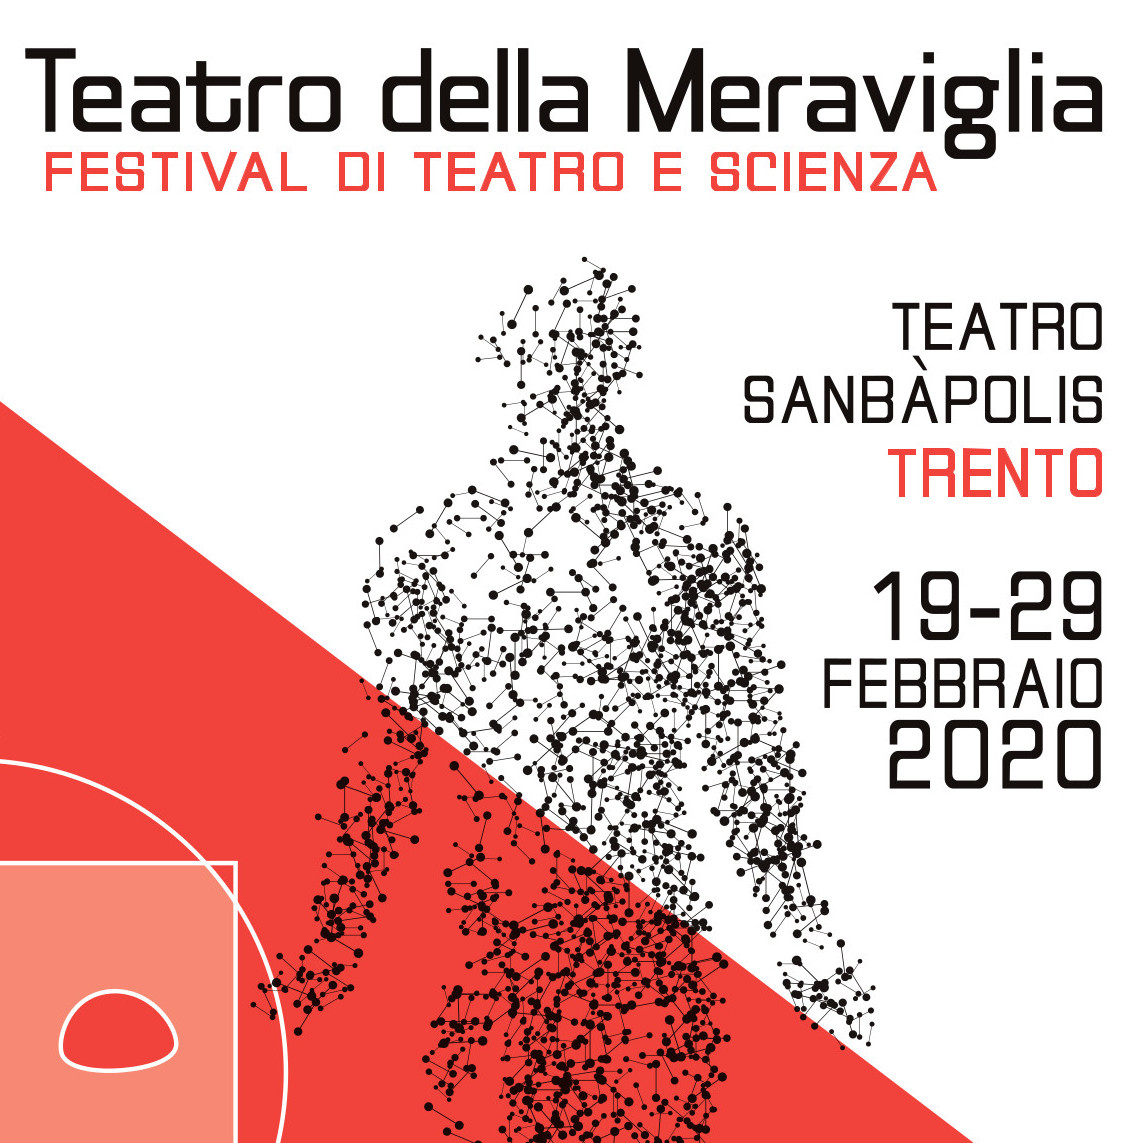 Teatro della Meraviglia - 4^ edizione del festival di teatro e scienza - dal 19 al 29 febbraio